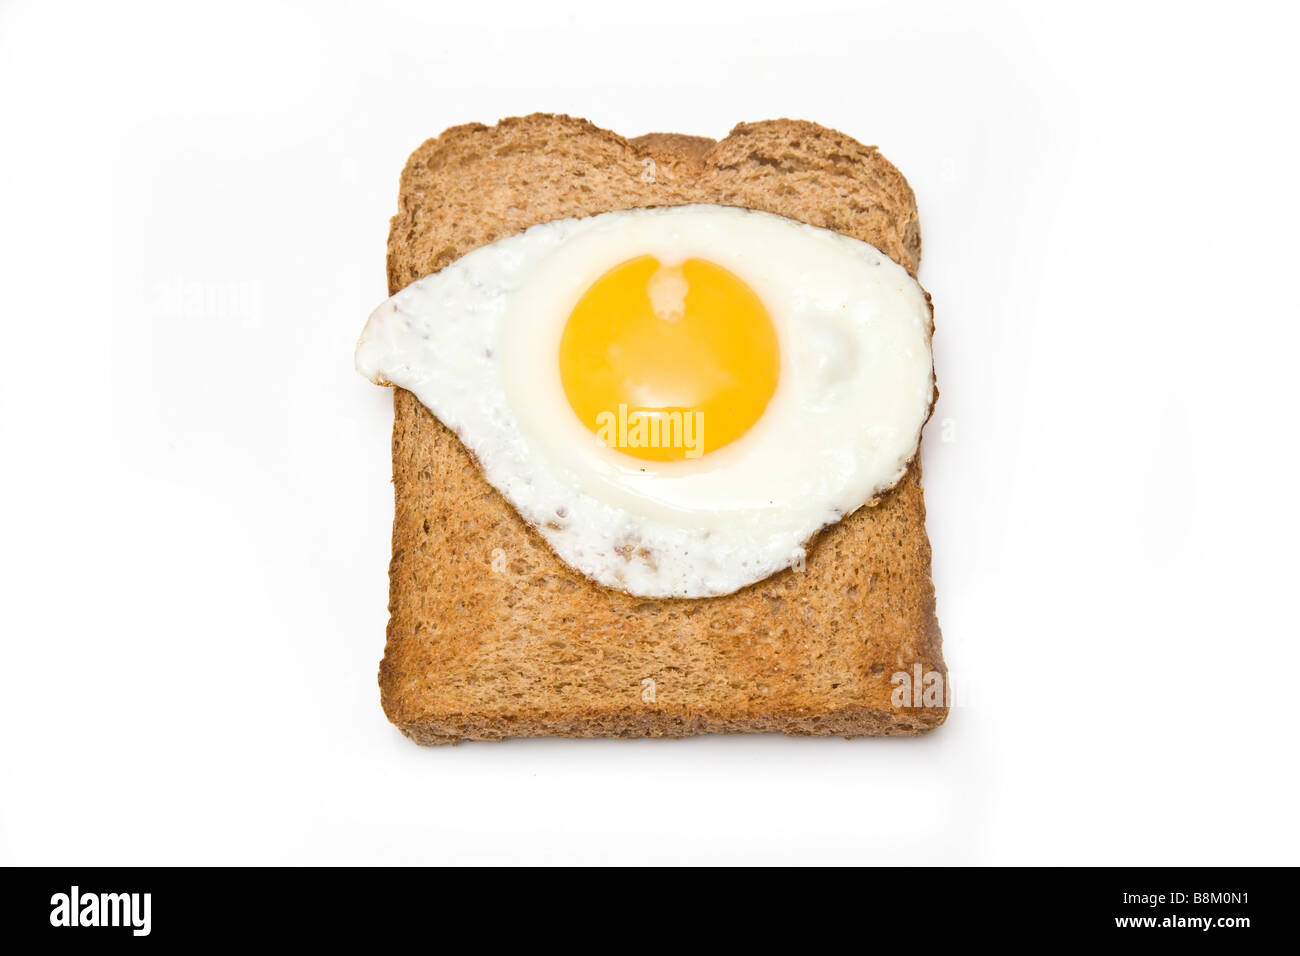 Spiegelei auf Toast isoliert auf einem weißen Studio-Hintergrund Stockfoto